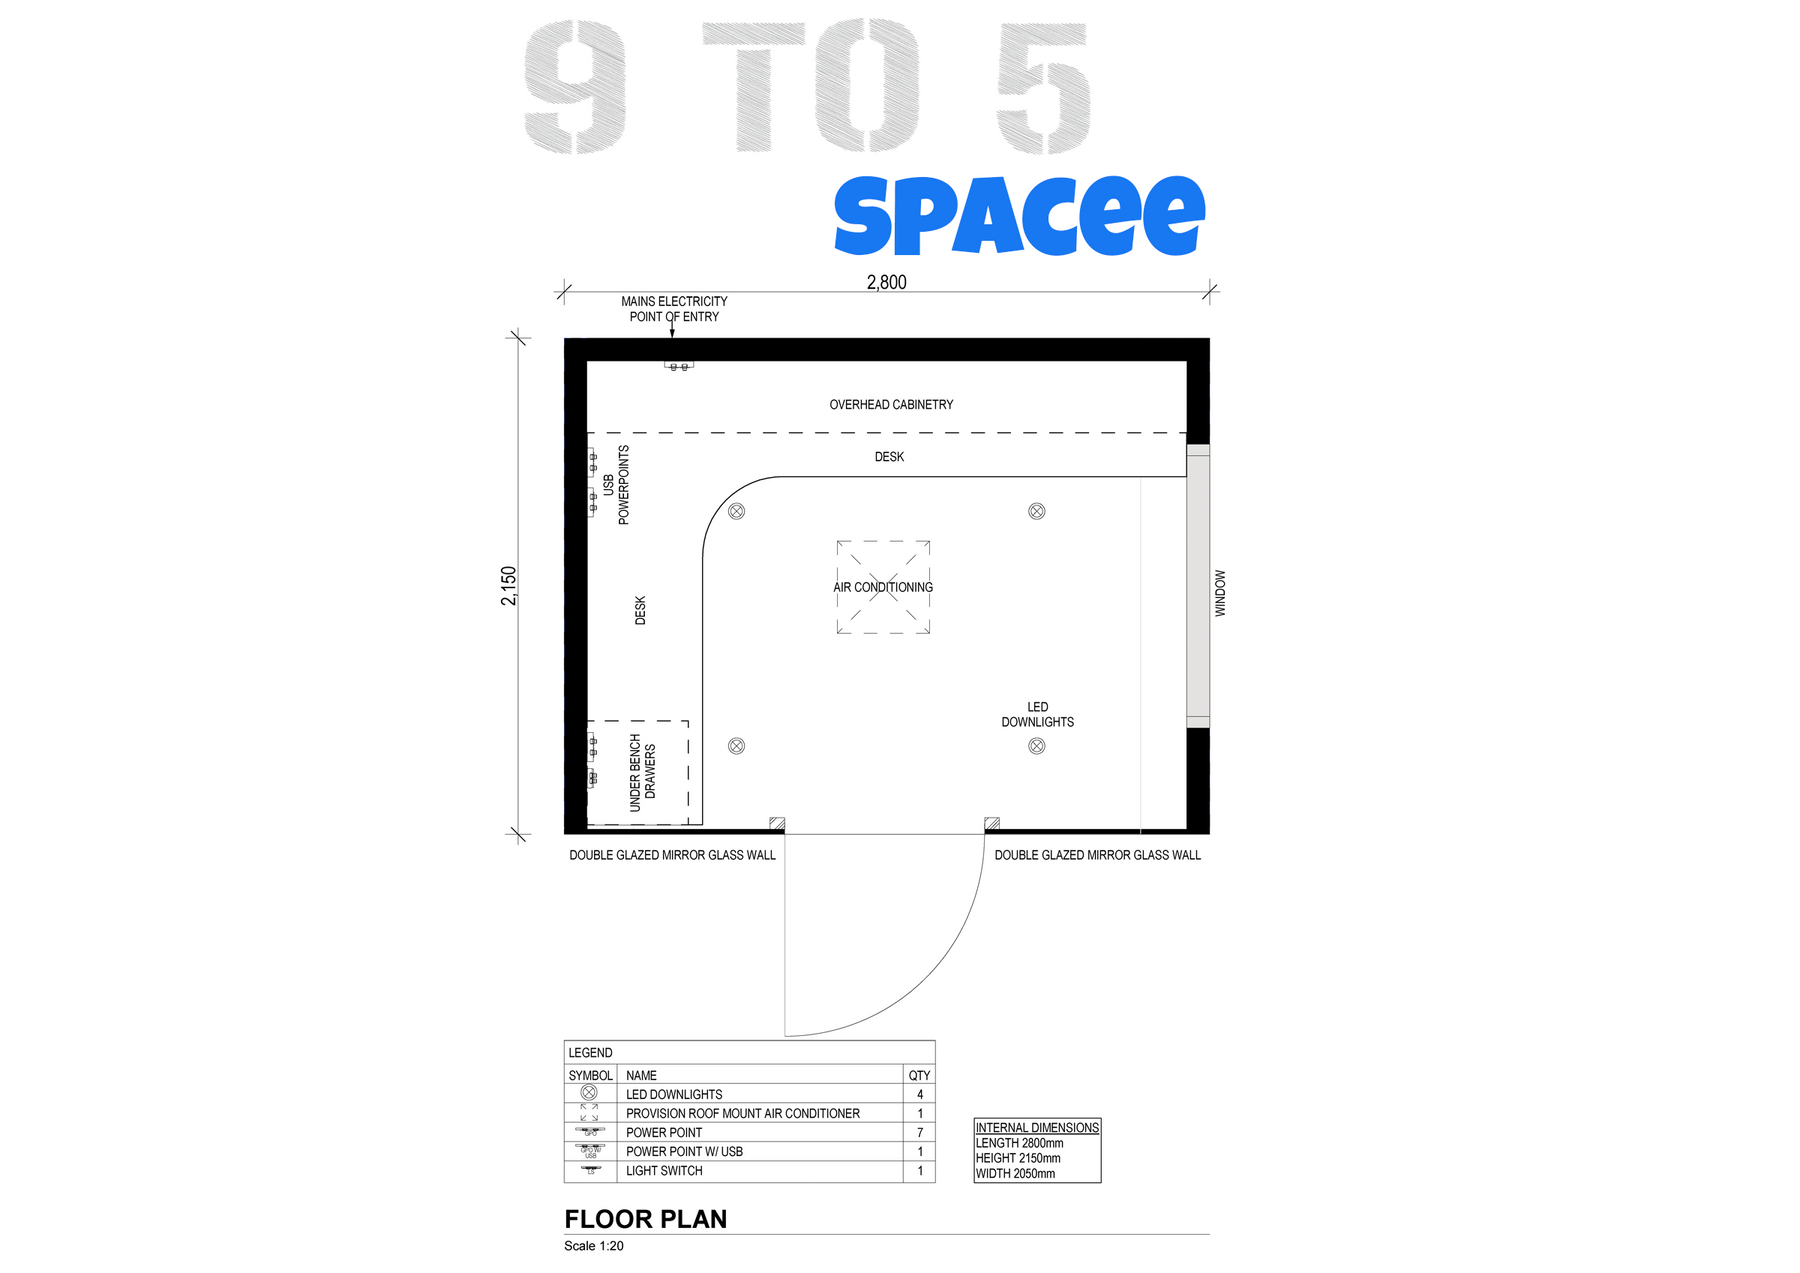 9 to 5 spacee floor plan